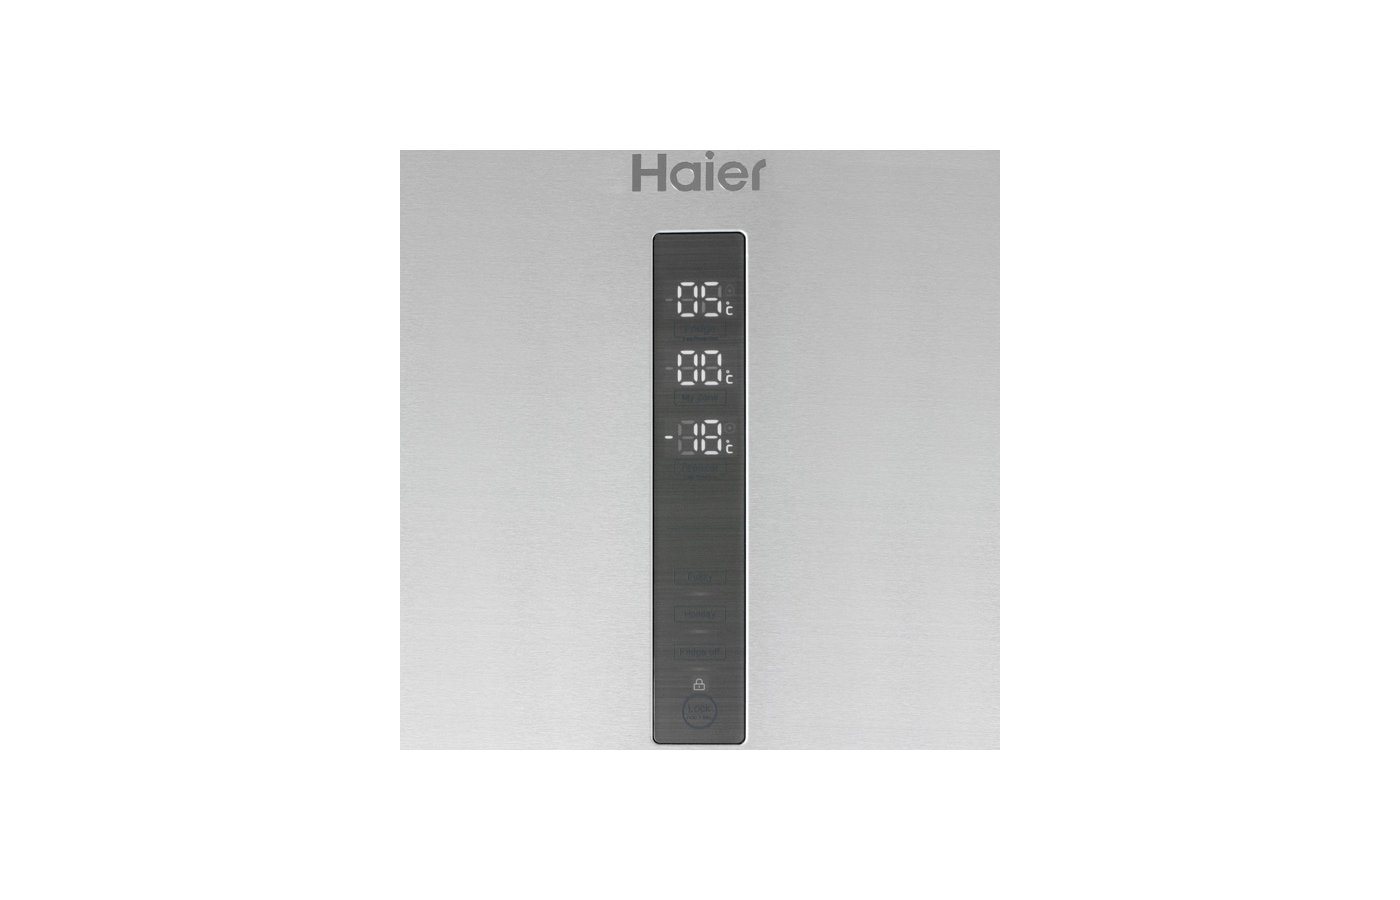 Airplay haier. Холодильник Haier a3fe742cmjru. Холодильник Haier cef535asg. Холодильник Haier a4f639cxmvu1. Холодильник Haier c4f640cwu1 панель управления.